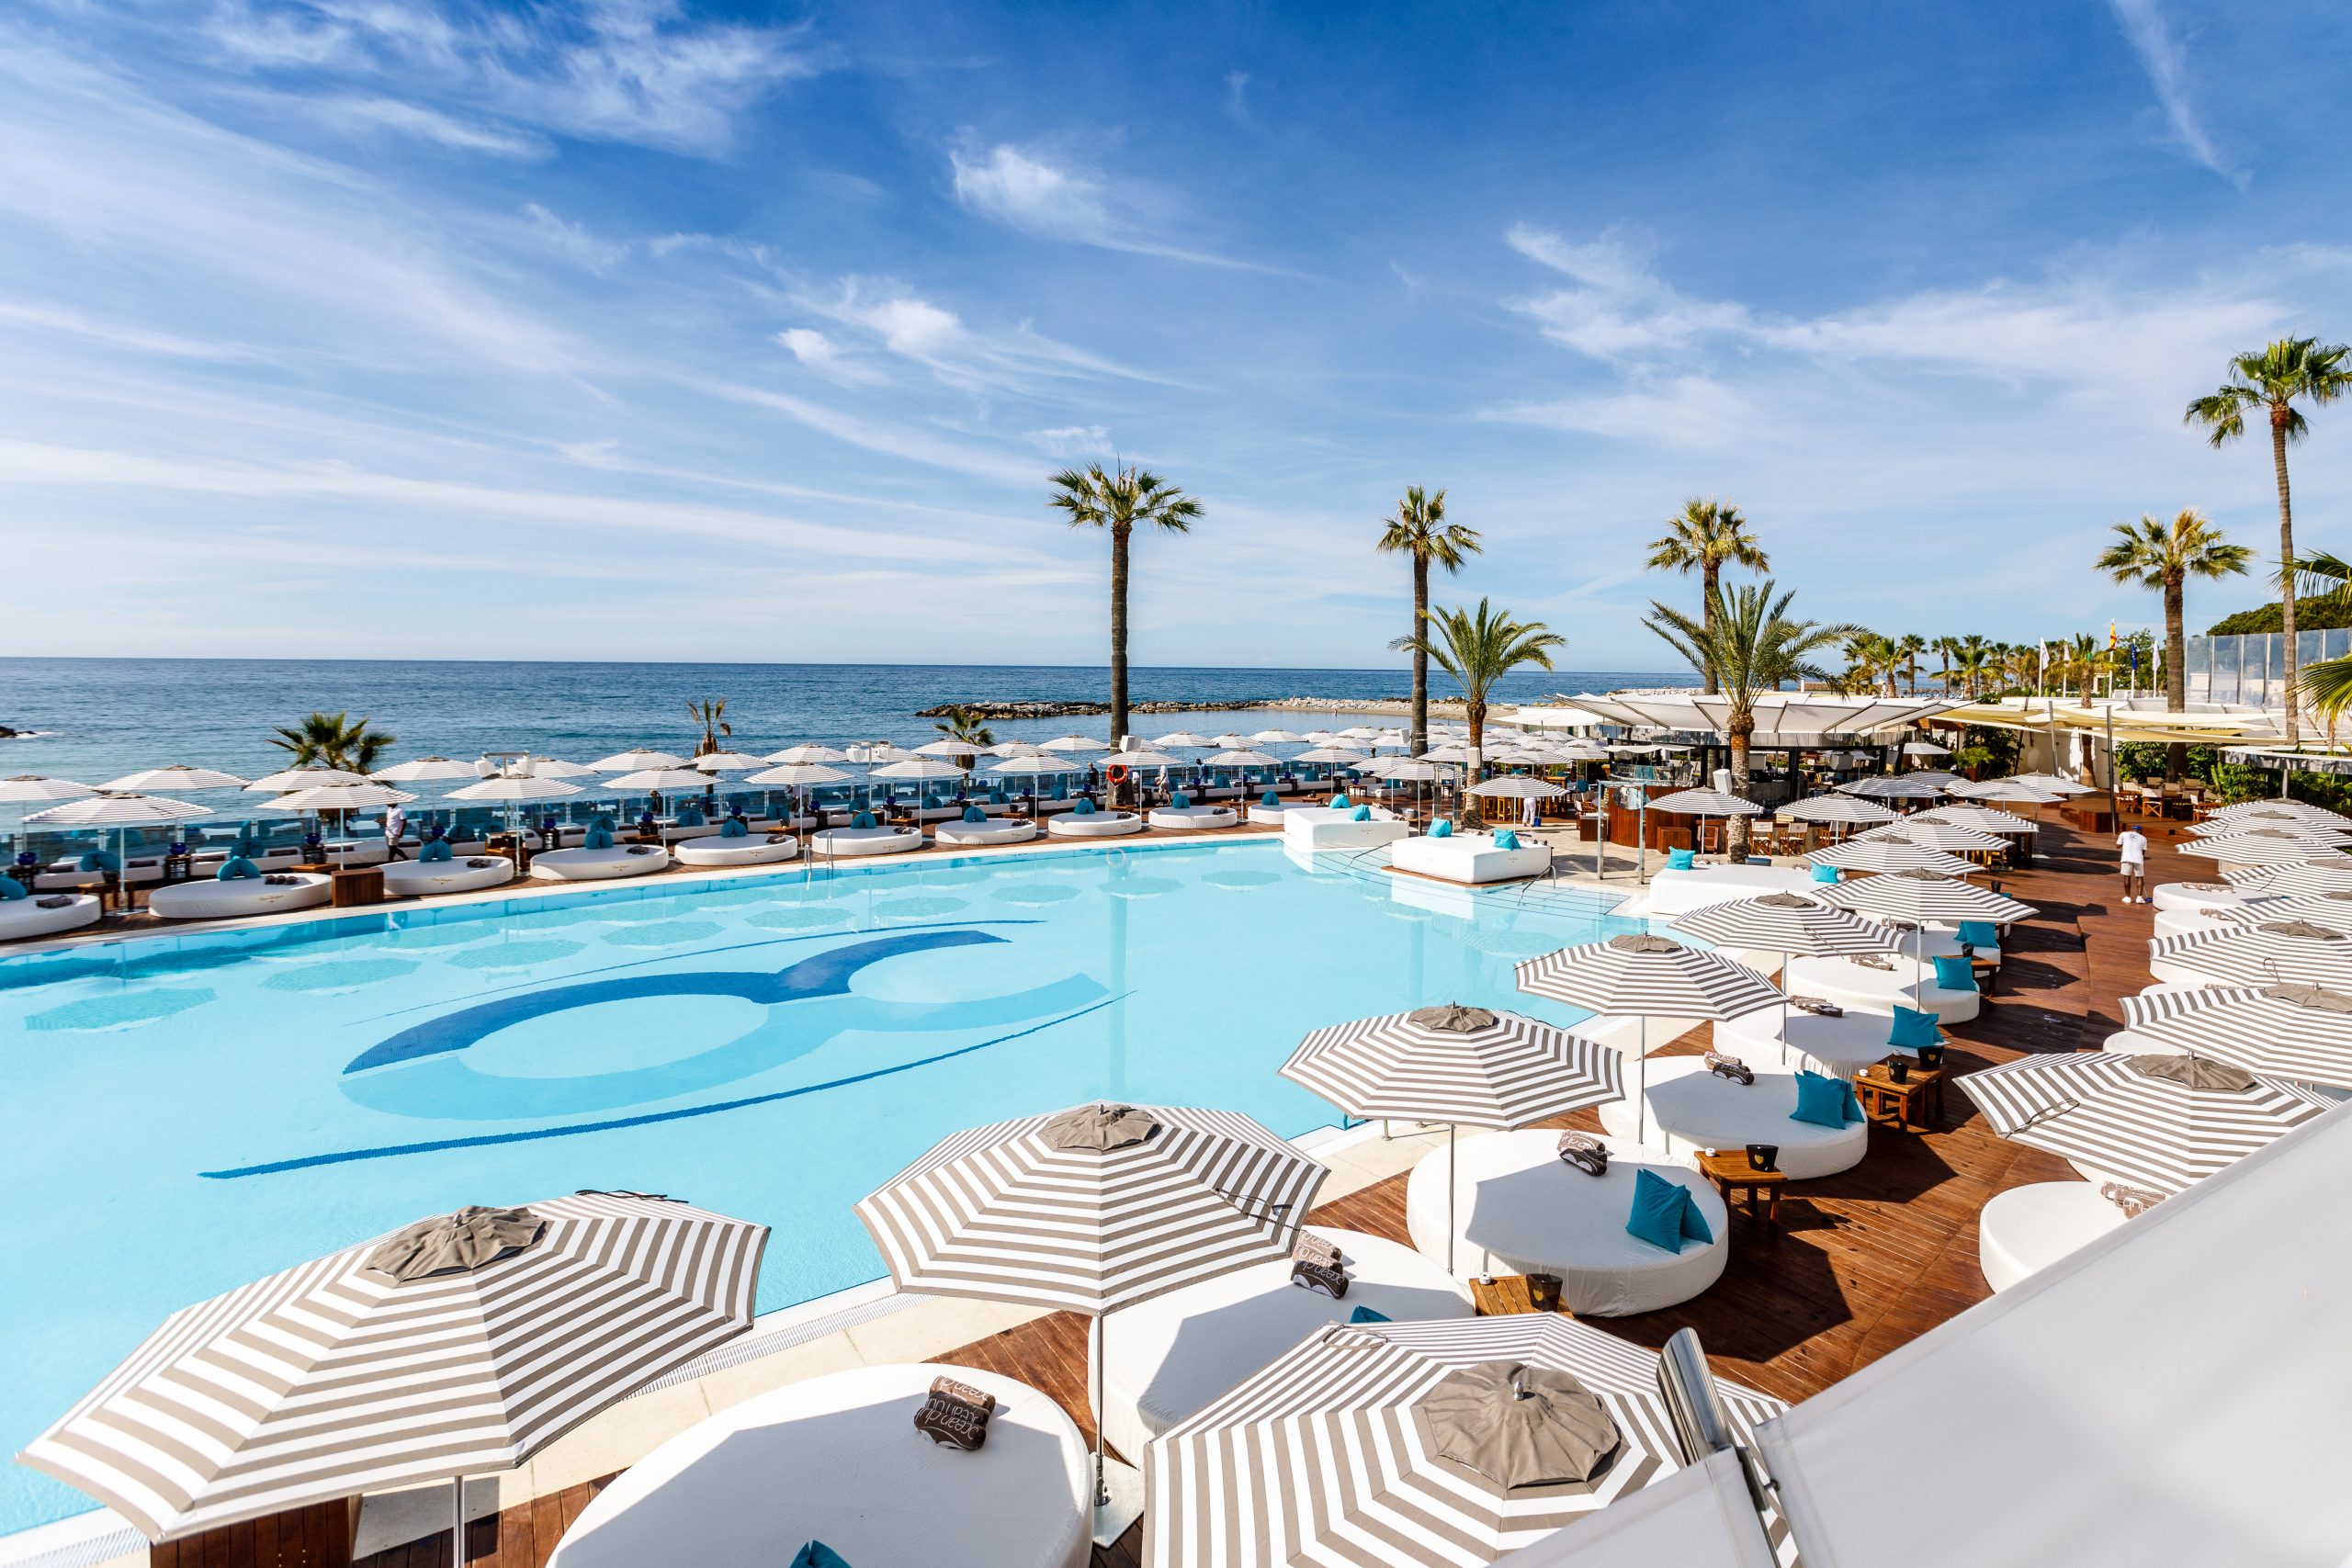 Der ikonische Ocean Club Marbella öffnet am 21. Mai